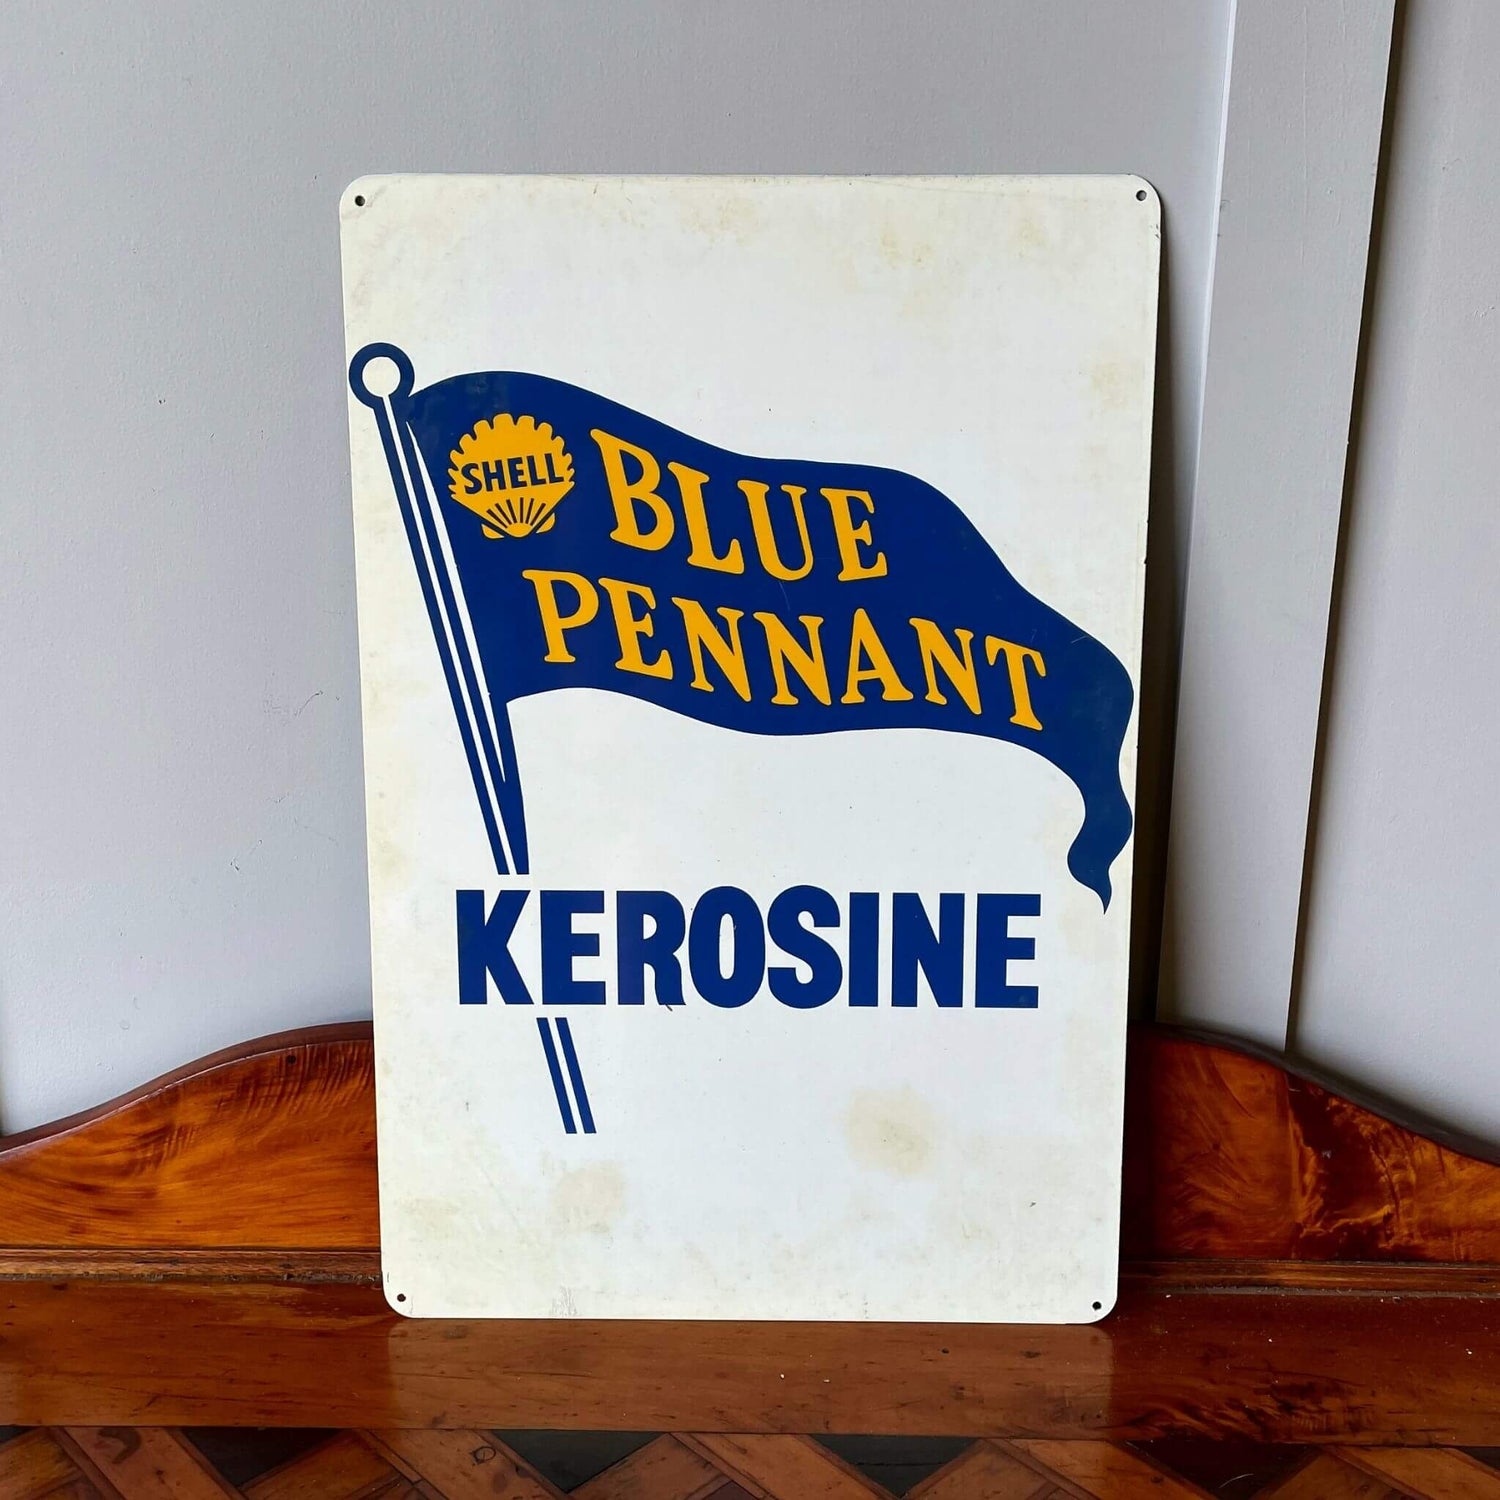 Shell Blue Pennant Kerosene advertising sign